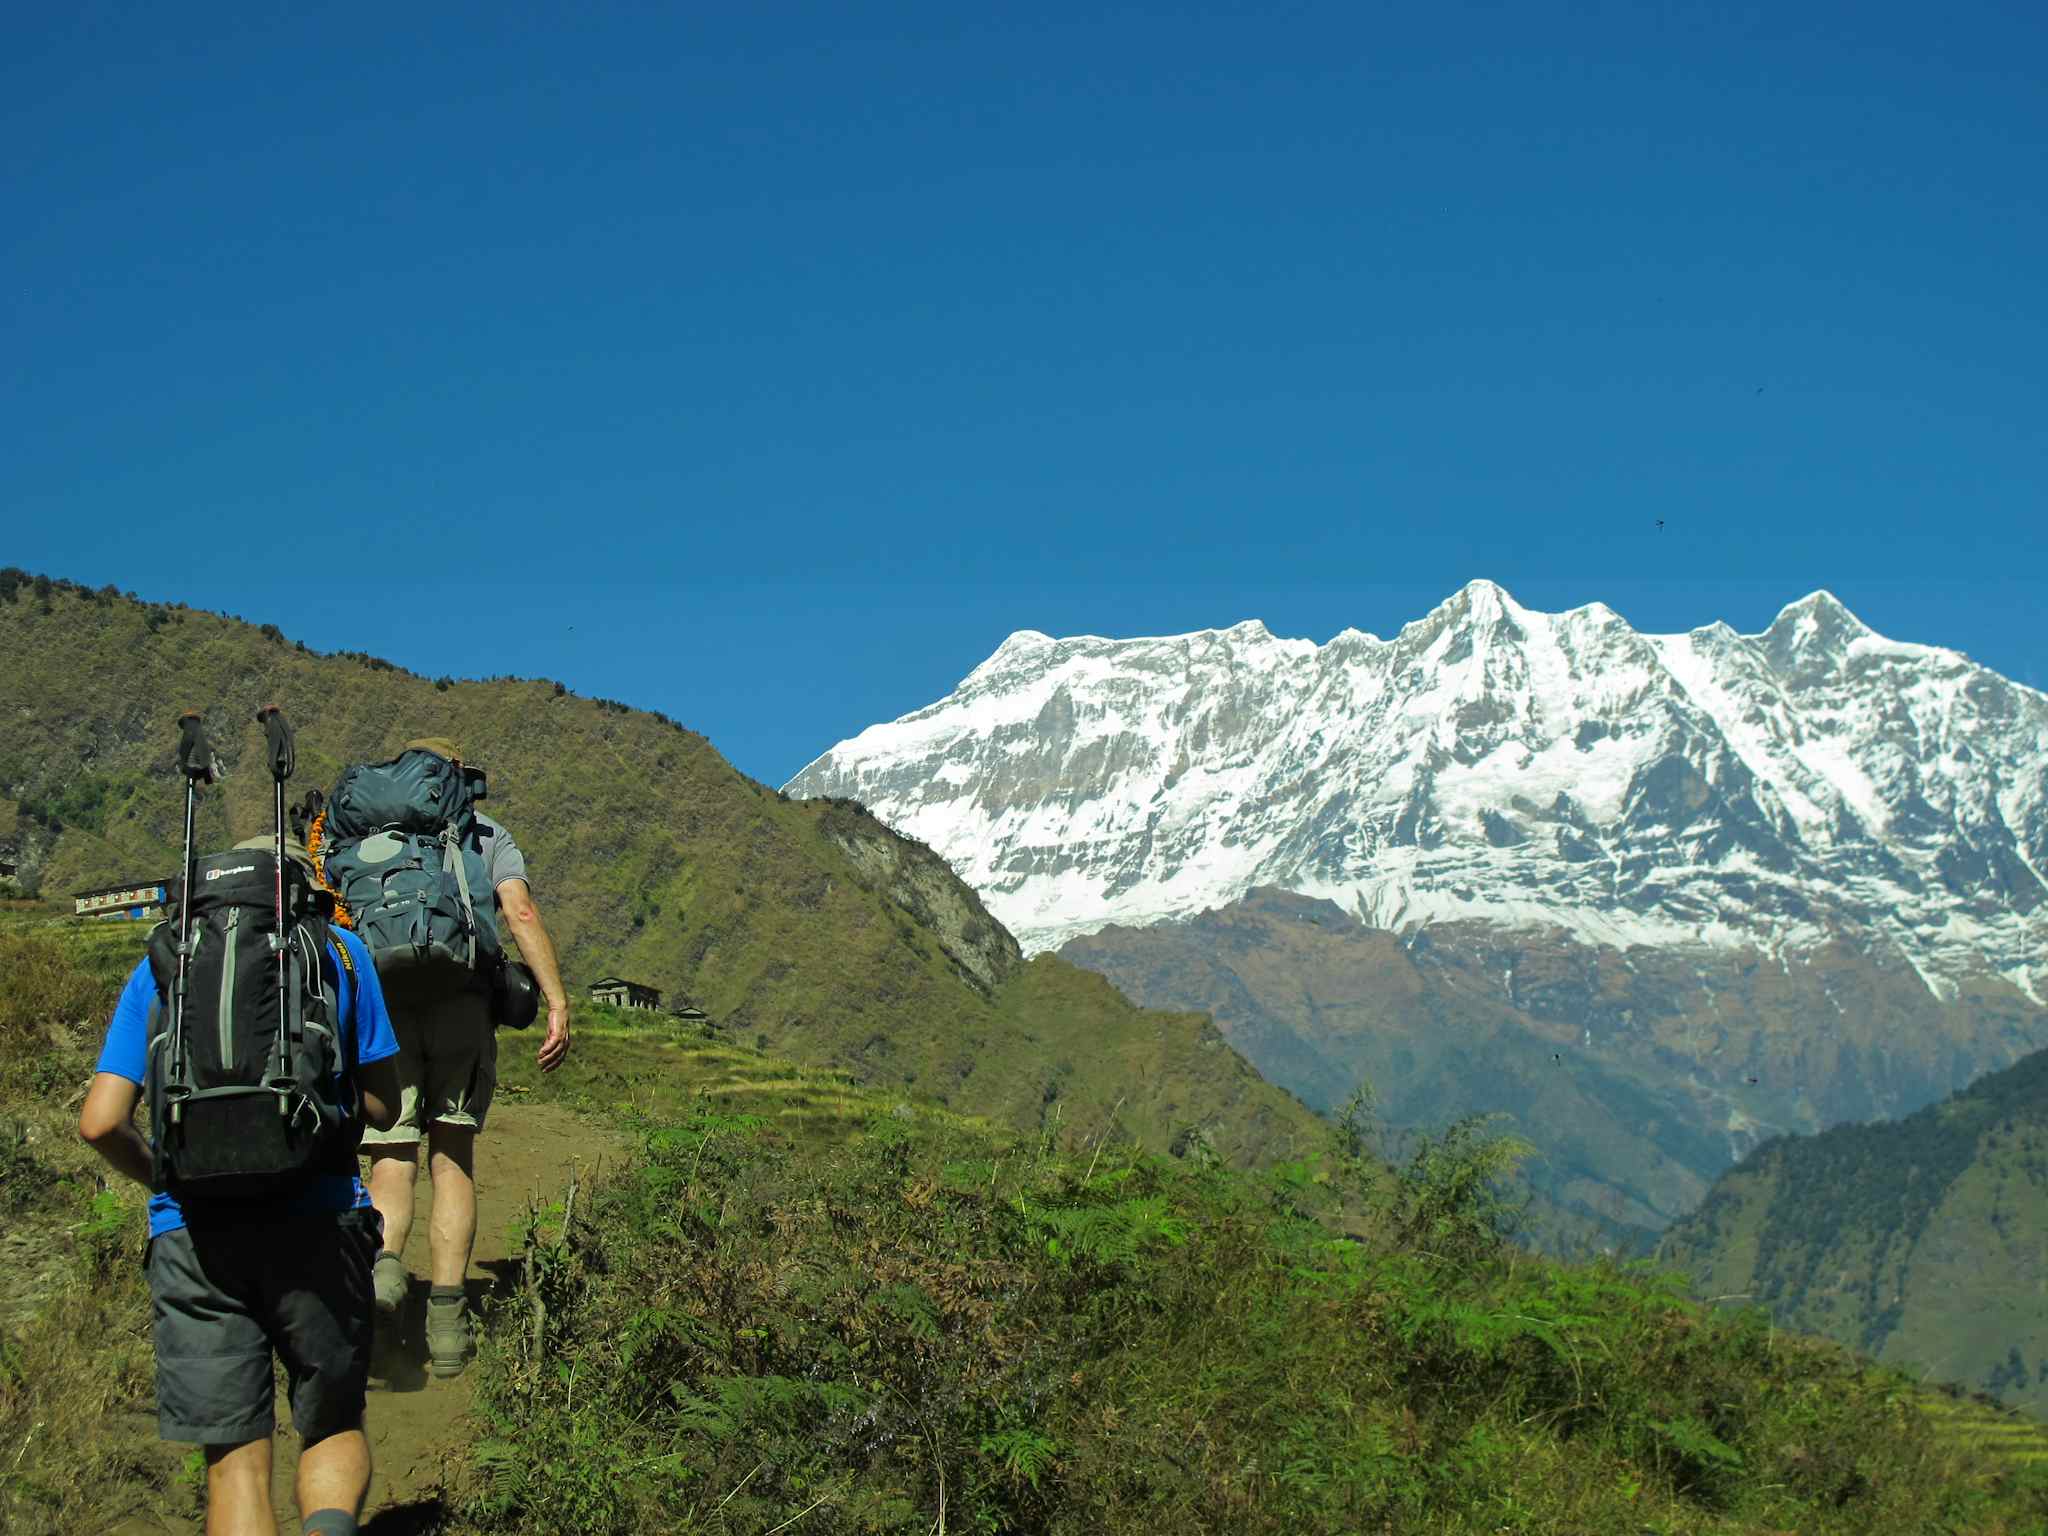 Trekking to Paiyan, Nepal. Photo: Host/Freedom Adventures